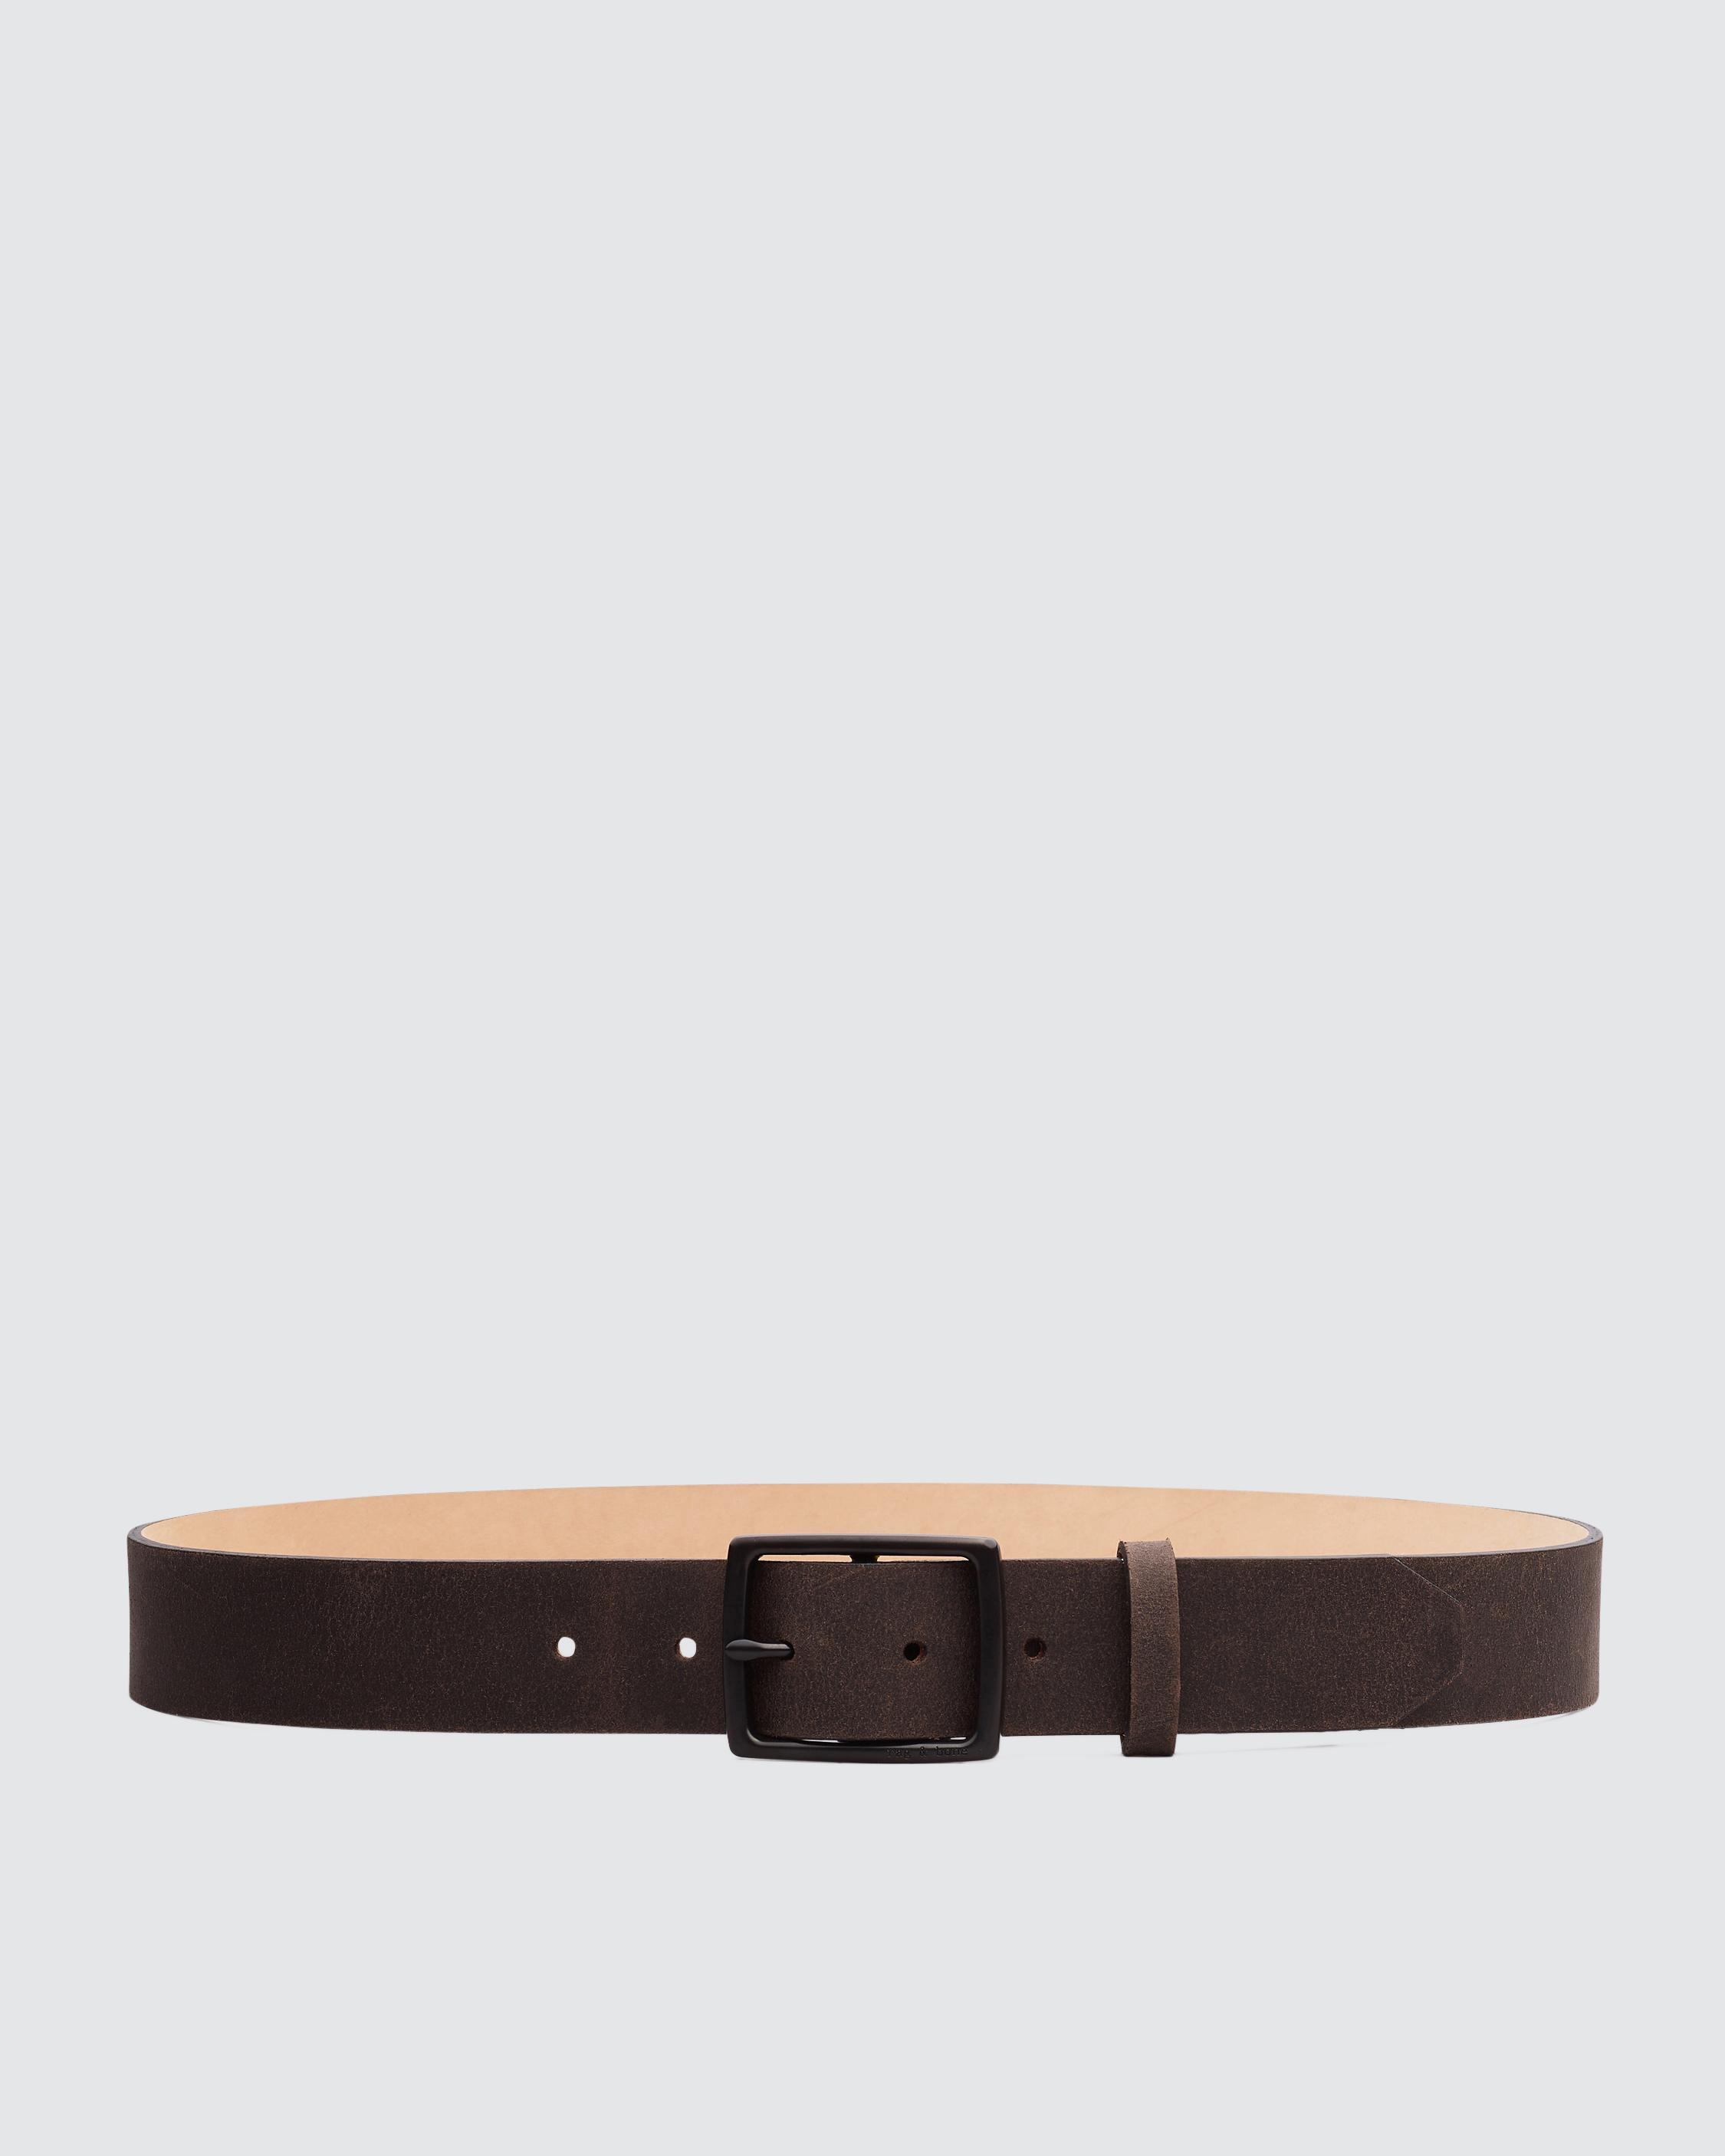 Rugged Belt
Leather 35mm Belt - 1